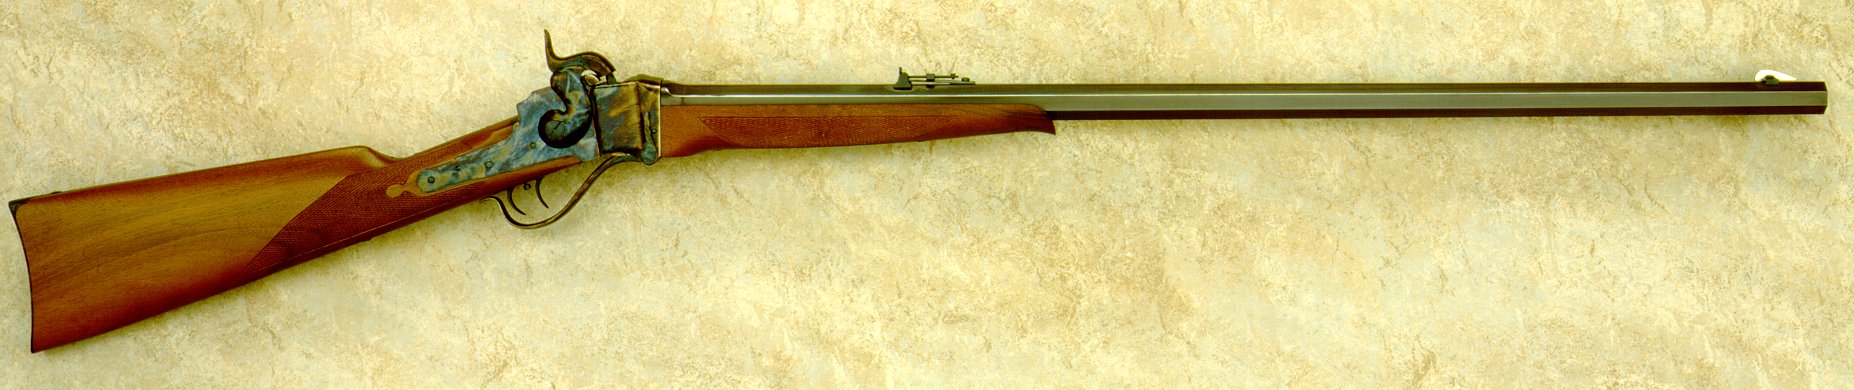 Sharps 1863 Rifle HD wallpapers, Desktop wallpaper - most viewed